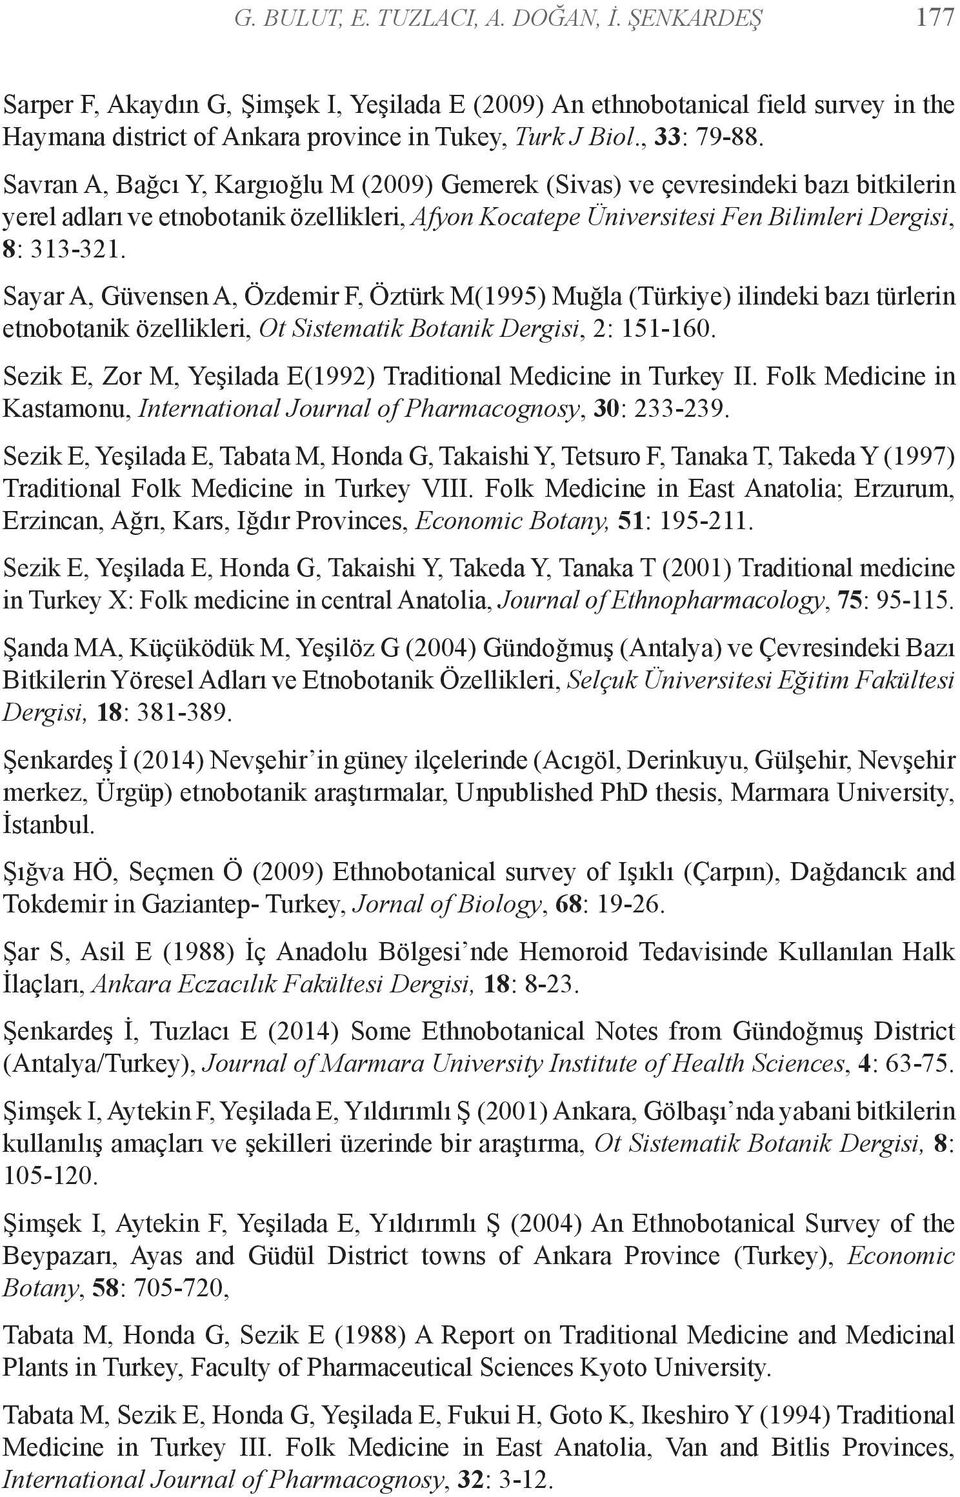 Savran A, Bağcı Y, Kargıoğlu M (2009) Gemerek (Sivas) ve çevresindeki bazı bitkilerin yerel adları ve etnobotanik özellikleri, Afyon Kocatepe Üniversitesi Fen Bilimleri Dergisi, 8: 313-321.